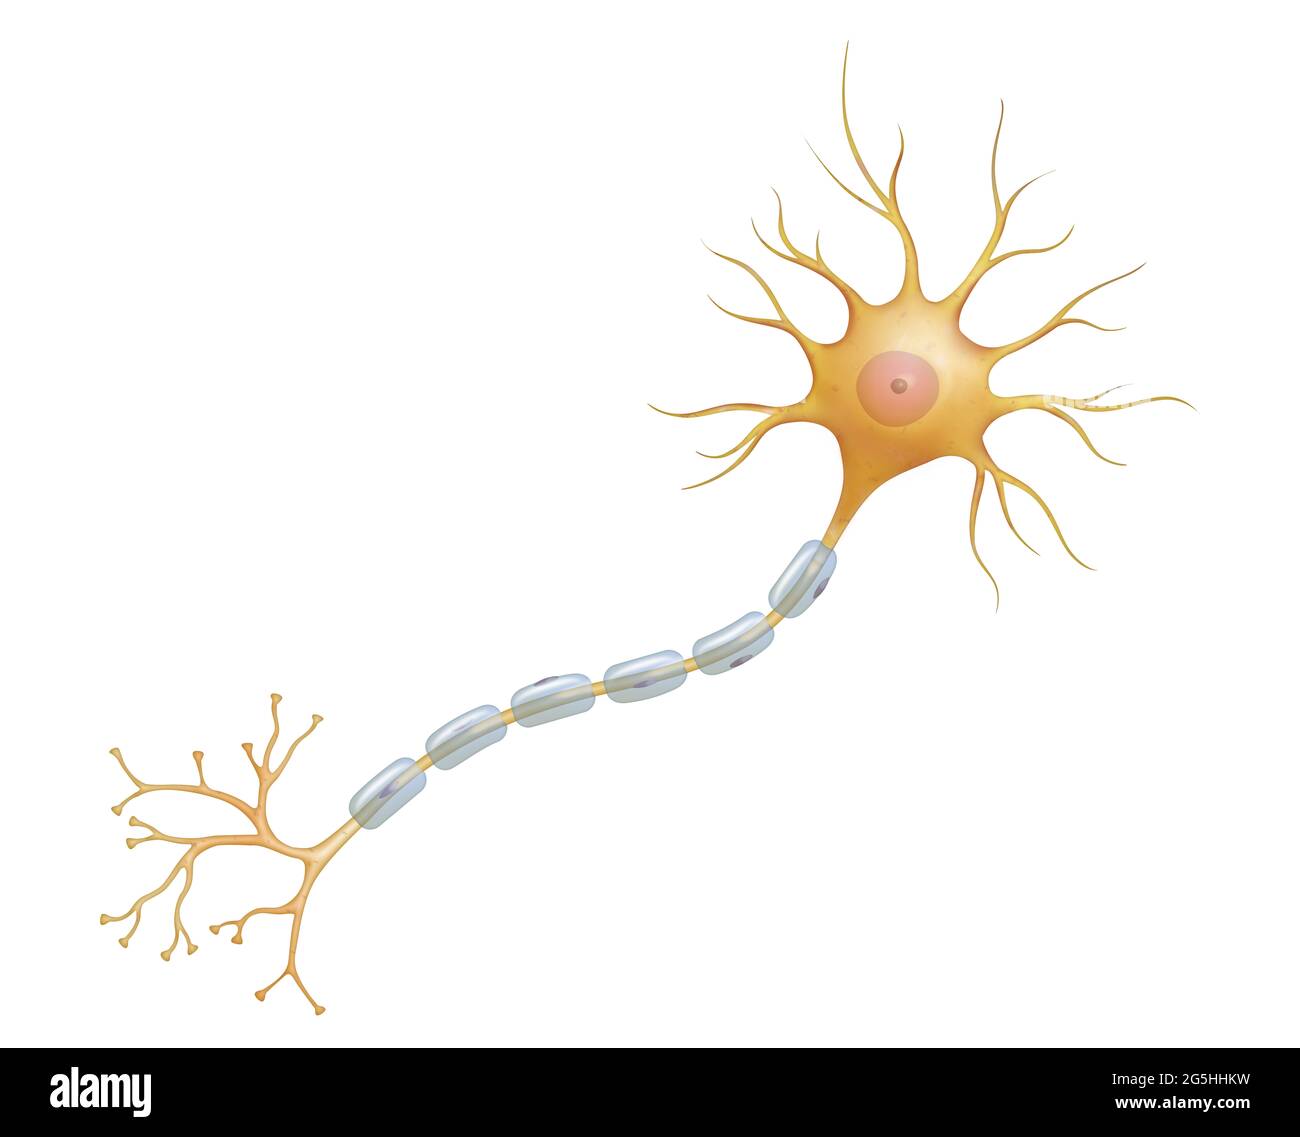 La neurona o célula nerviosa es el componente principal del tejido nervioso  Fotografía de stock - Alamy